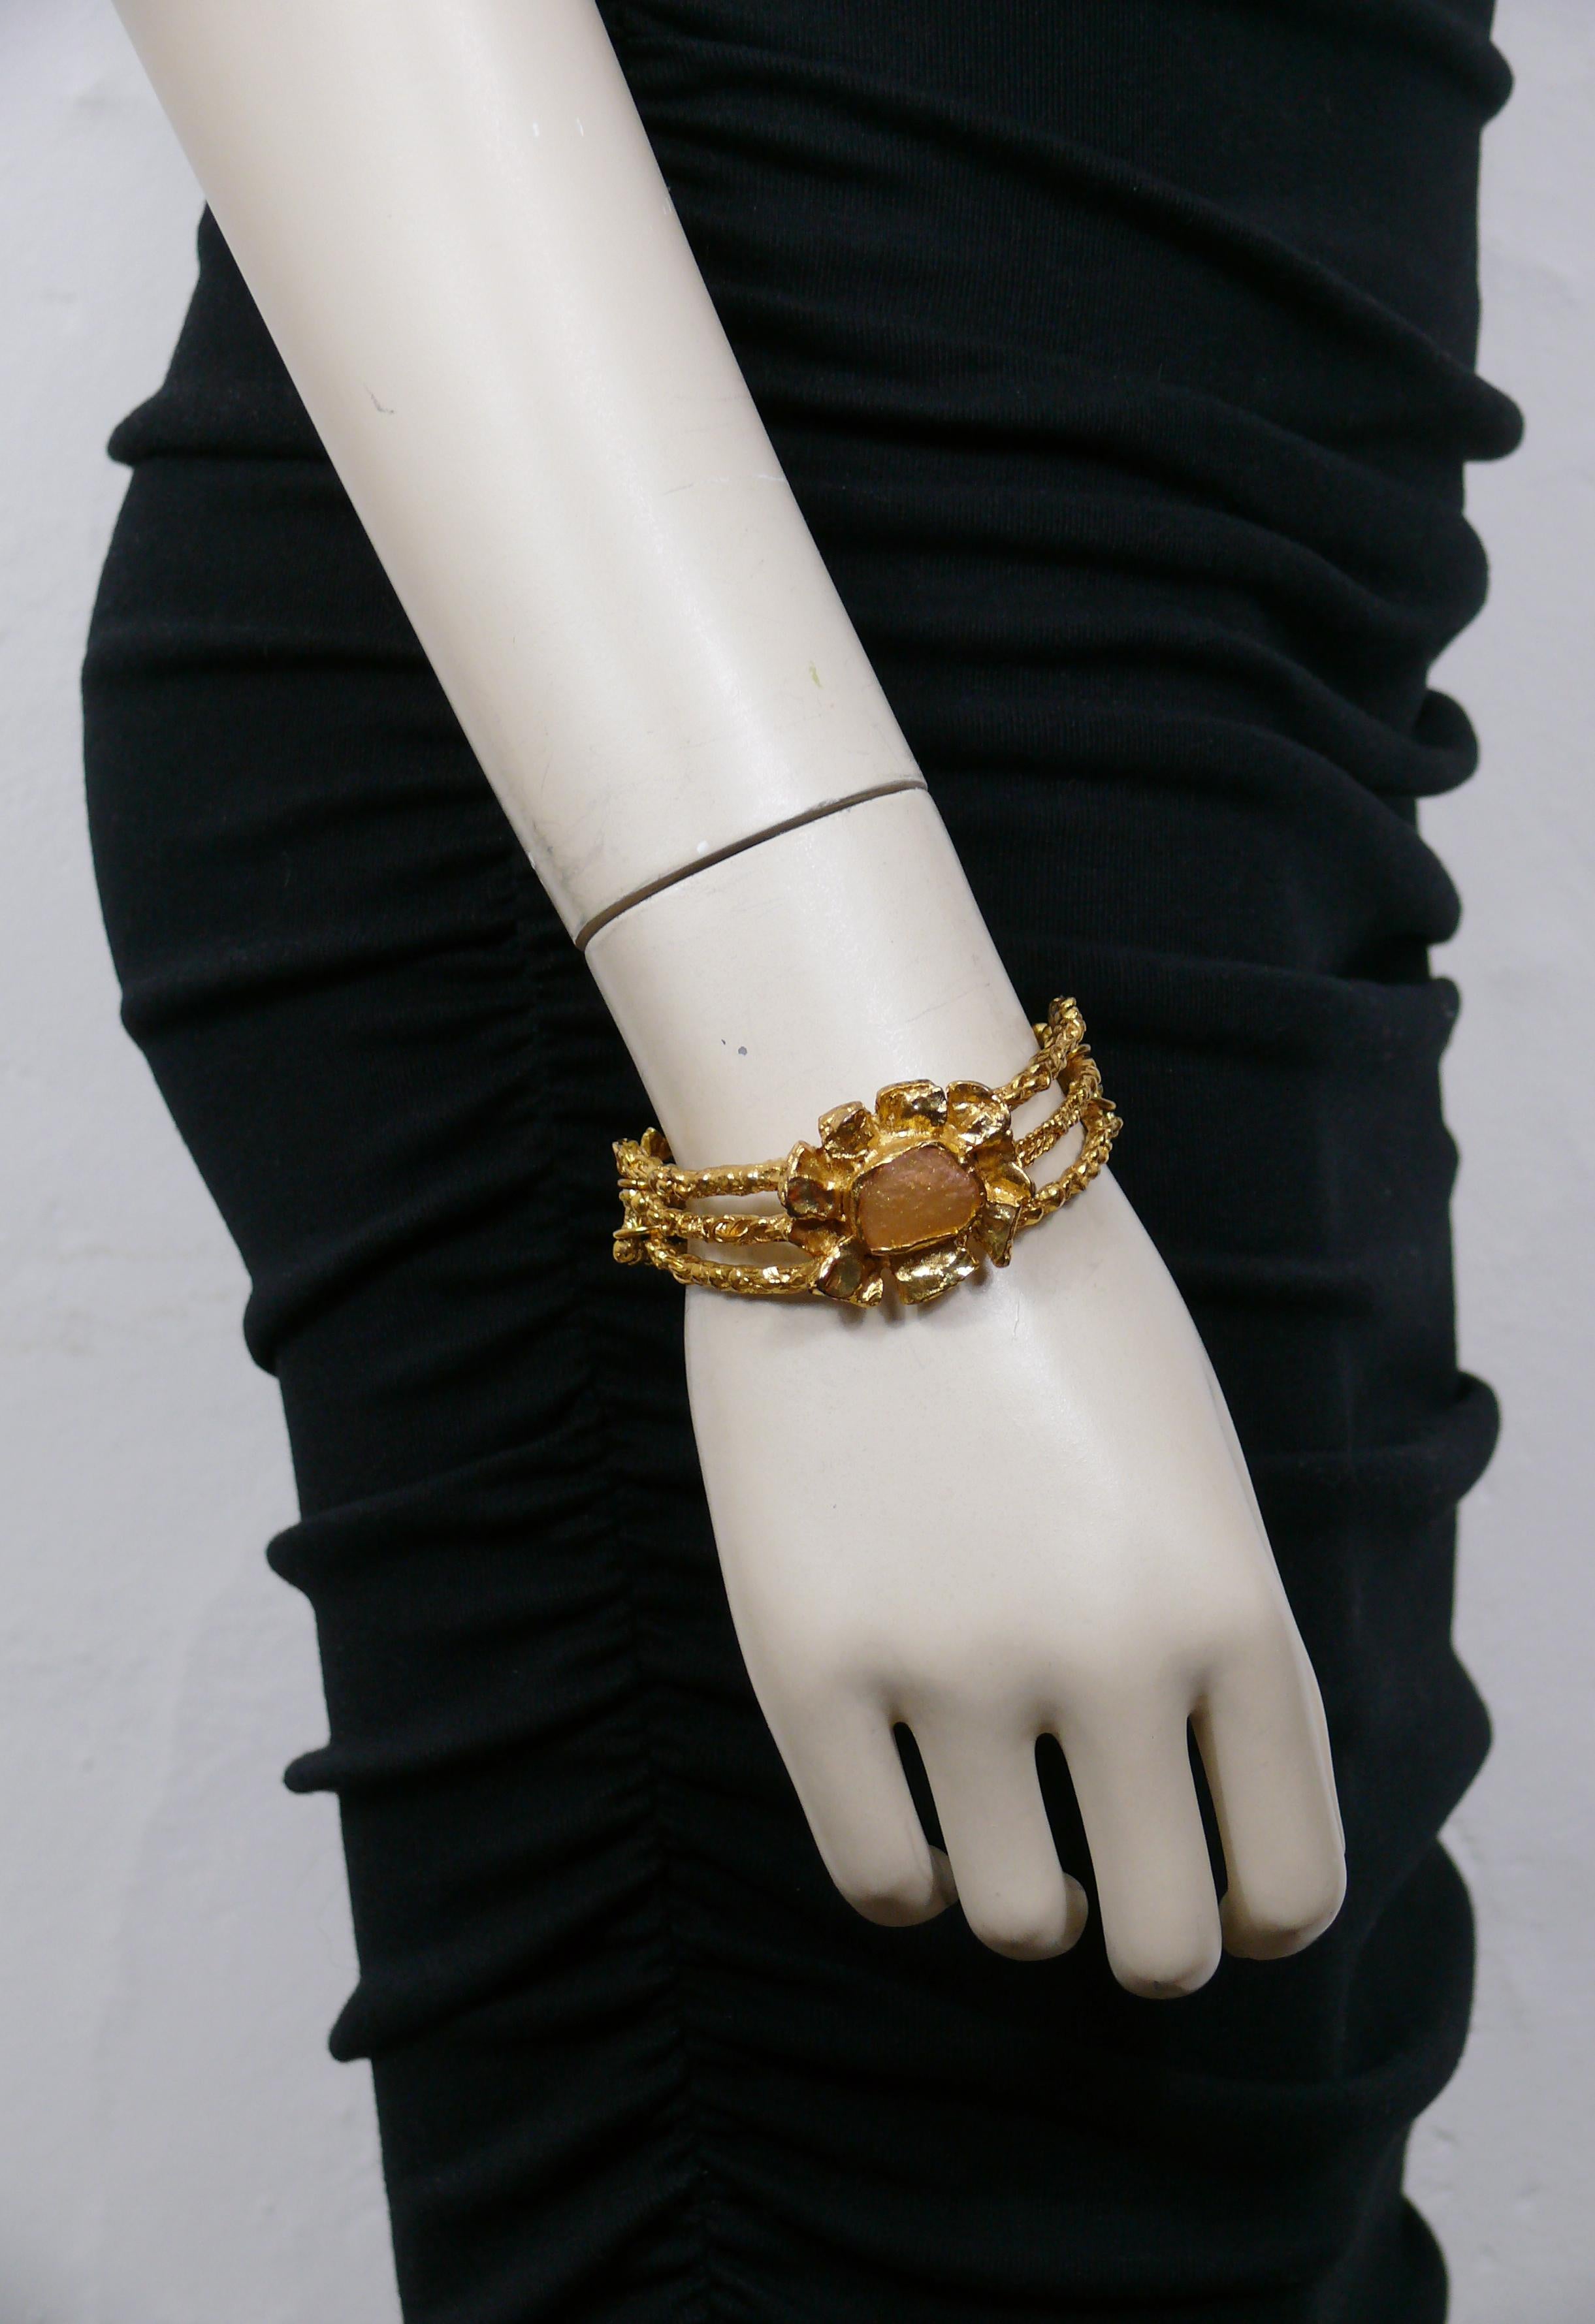 CHRISTIAN LACROIX Vintage-Armband mit goldfarbener Struktur und einer stilisierten Blume in der Mitte, die mit rosa Harz verziert ist.

T-Bügel und Knebelschließe.

Gezeichnet CHRISTIAN LACROIX CL Made in France.

Ungefähre Maße: Umfang ca. 17,28 cm